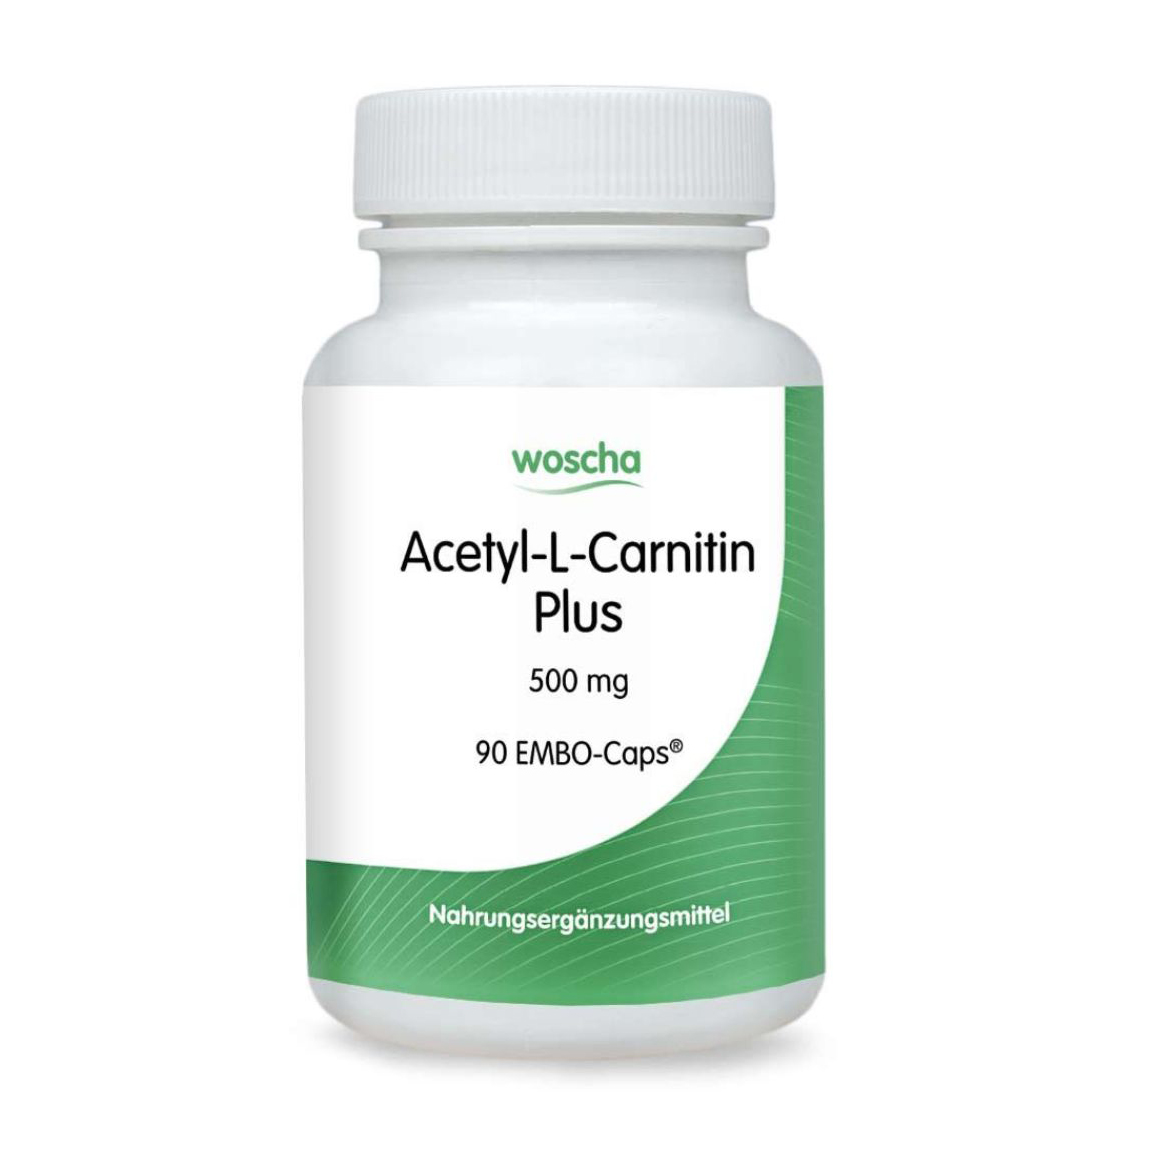 Woscha Acetyl-L-Carnitin Plus 500 mg von podo medi beinhaltet 90 EMBO-Caps